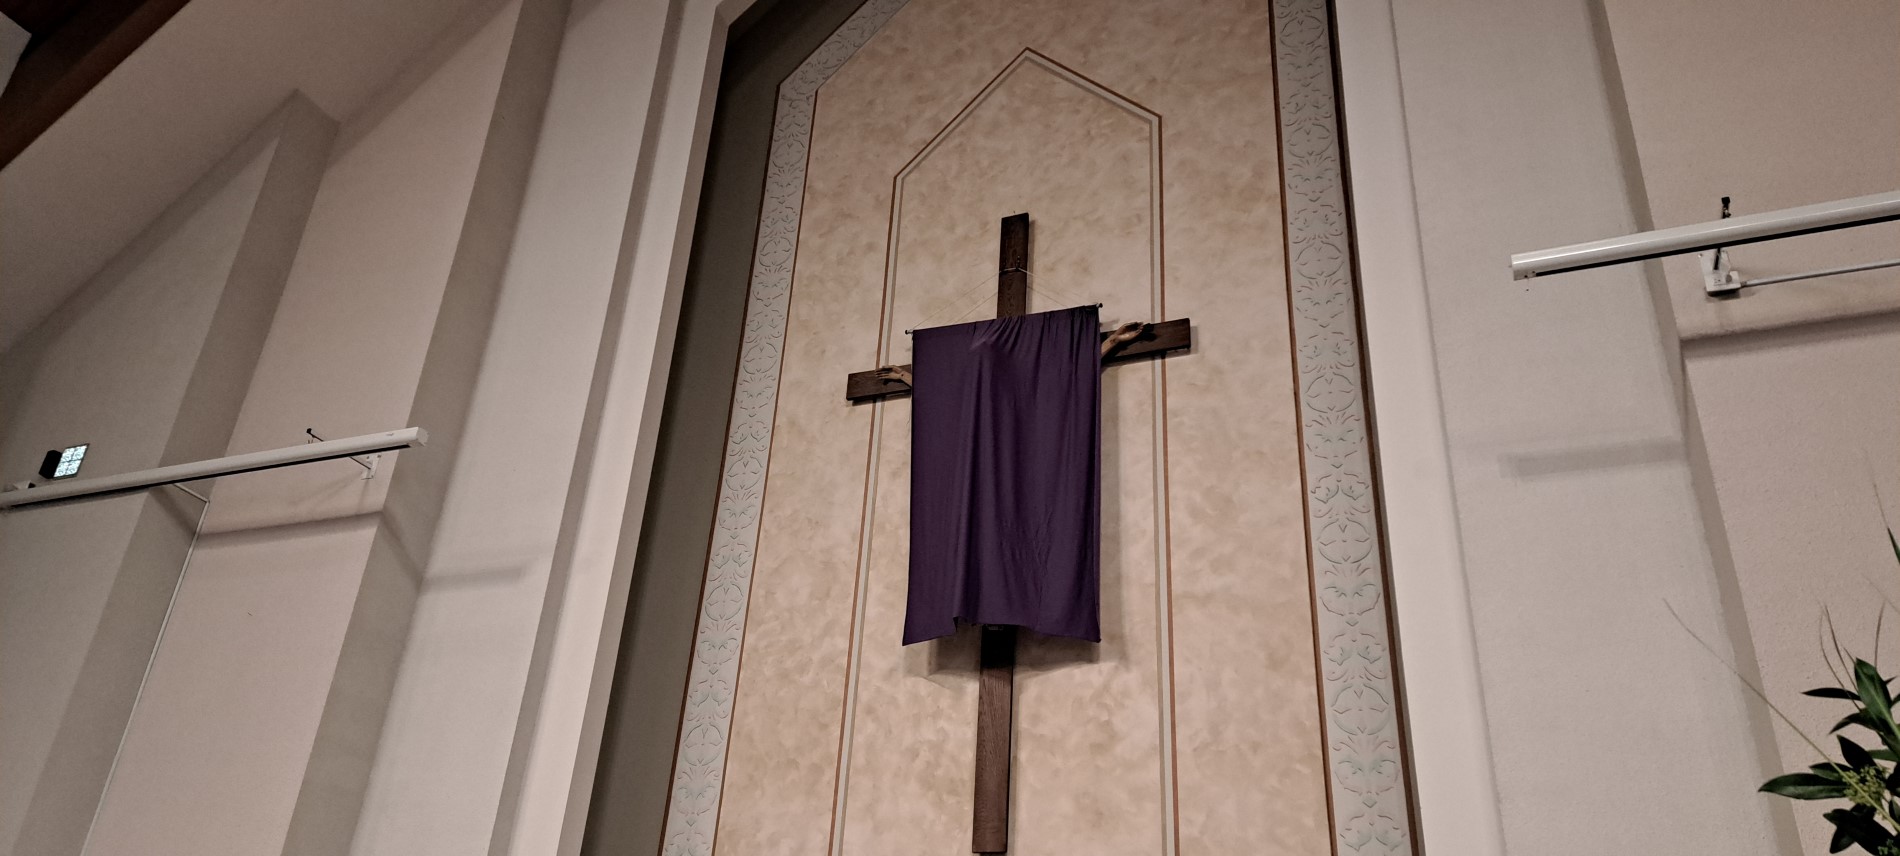 Big crucifix veiled in purple cloth